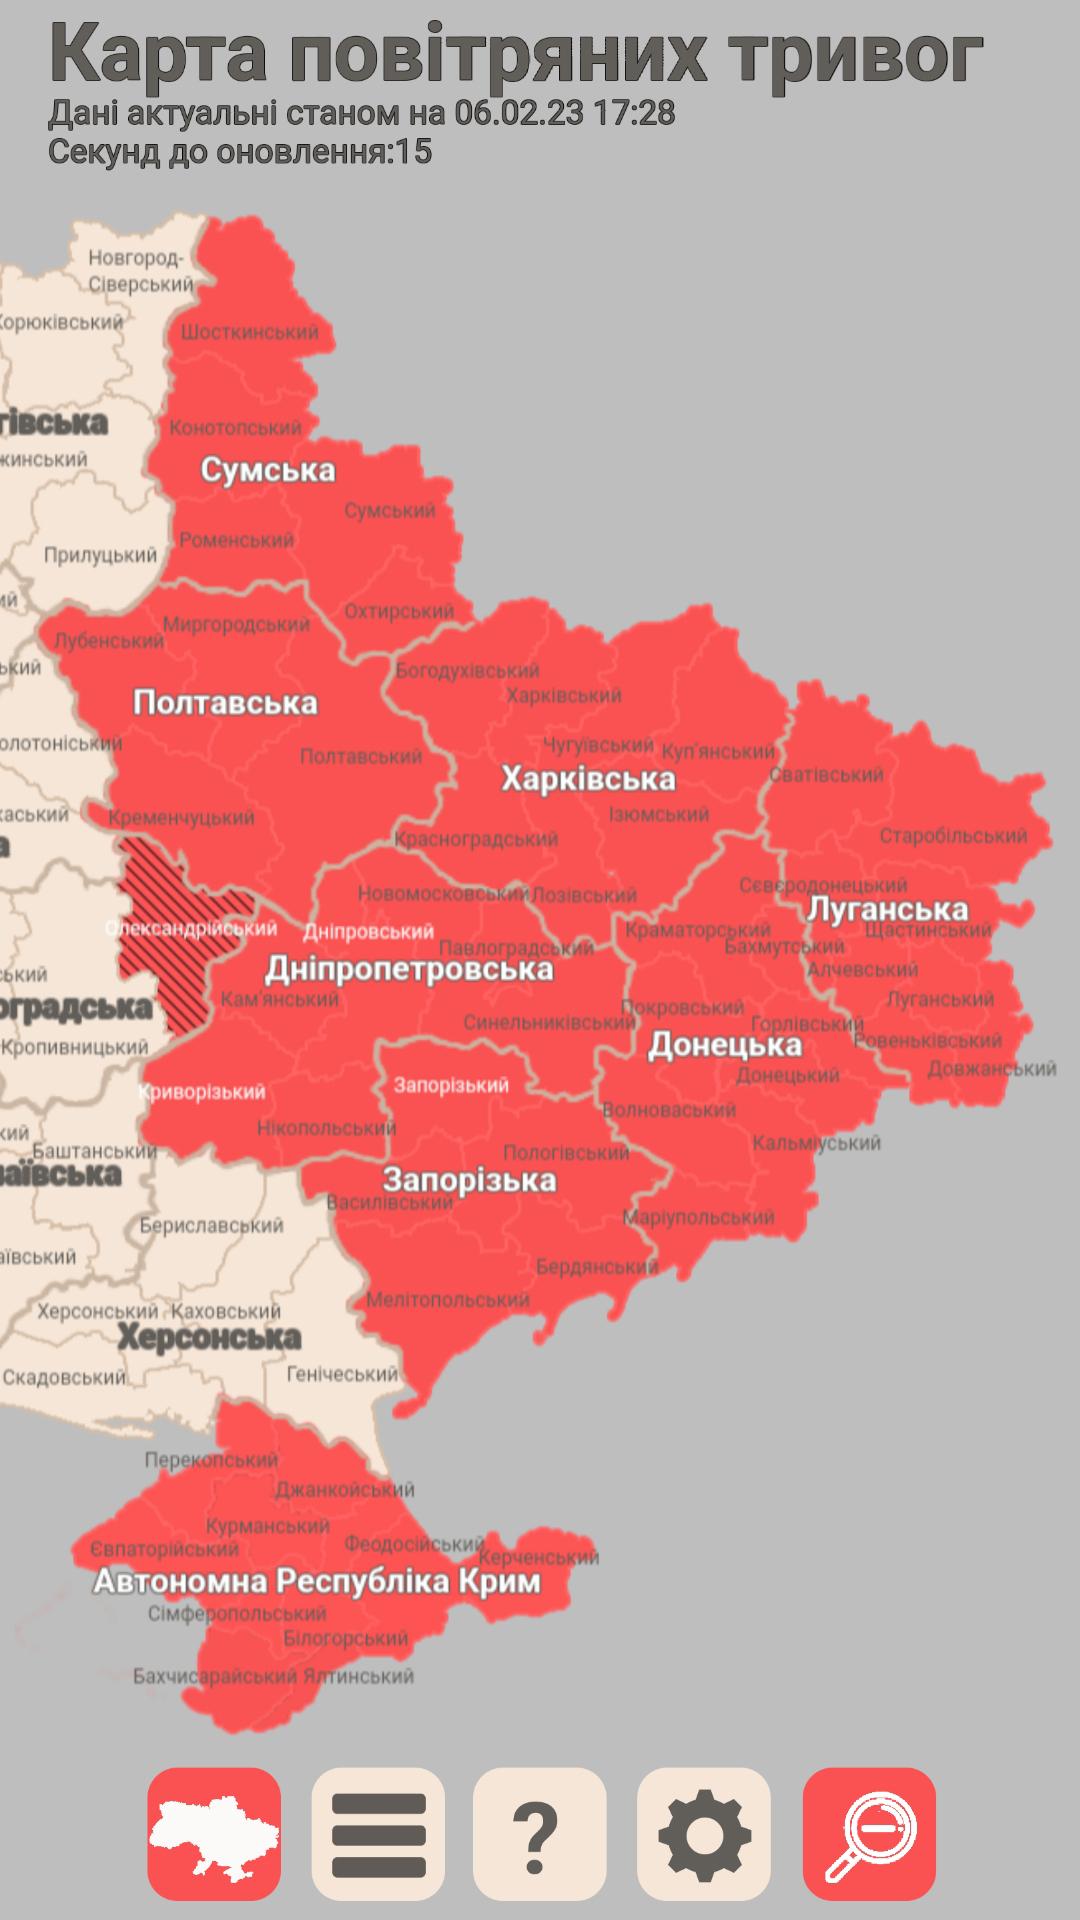 Карта повитряних тревог украины. Карта тривог. Карта тревог в Украине. Карта повітряних тривог в Україні.